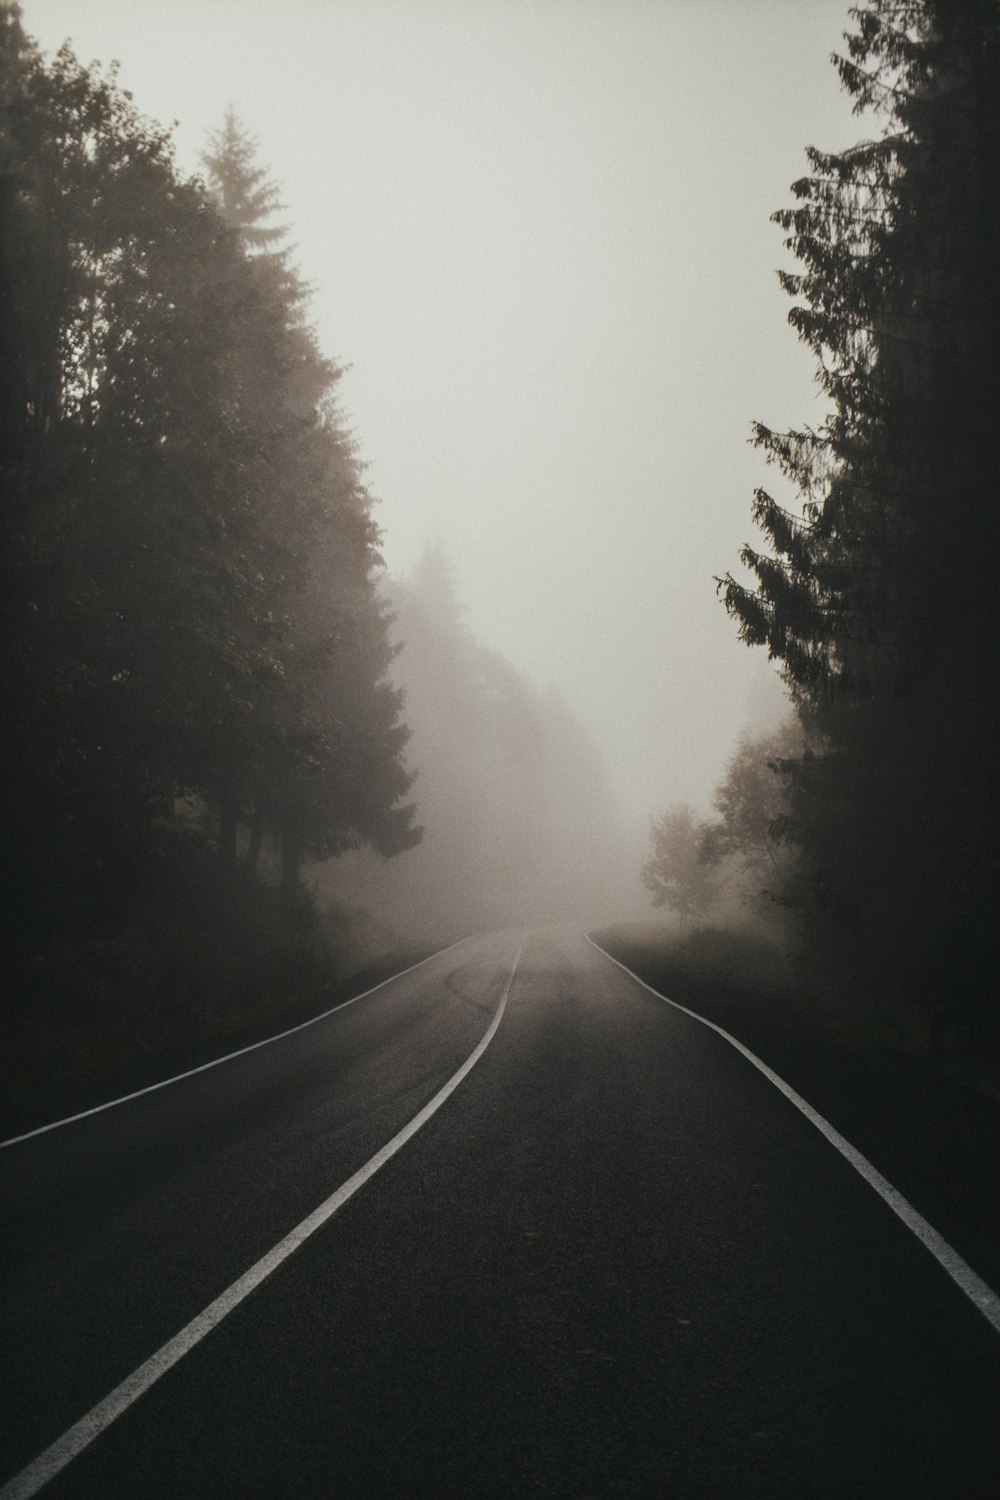 Schwarze Asphaltstraße zwischen grünen Bäumen, die tagsüber mit Nebel bedeckt sind